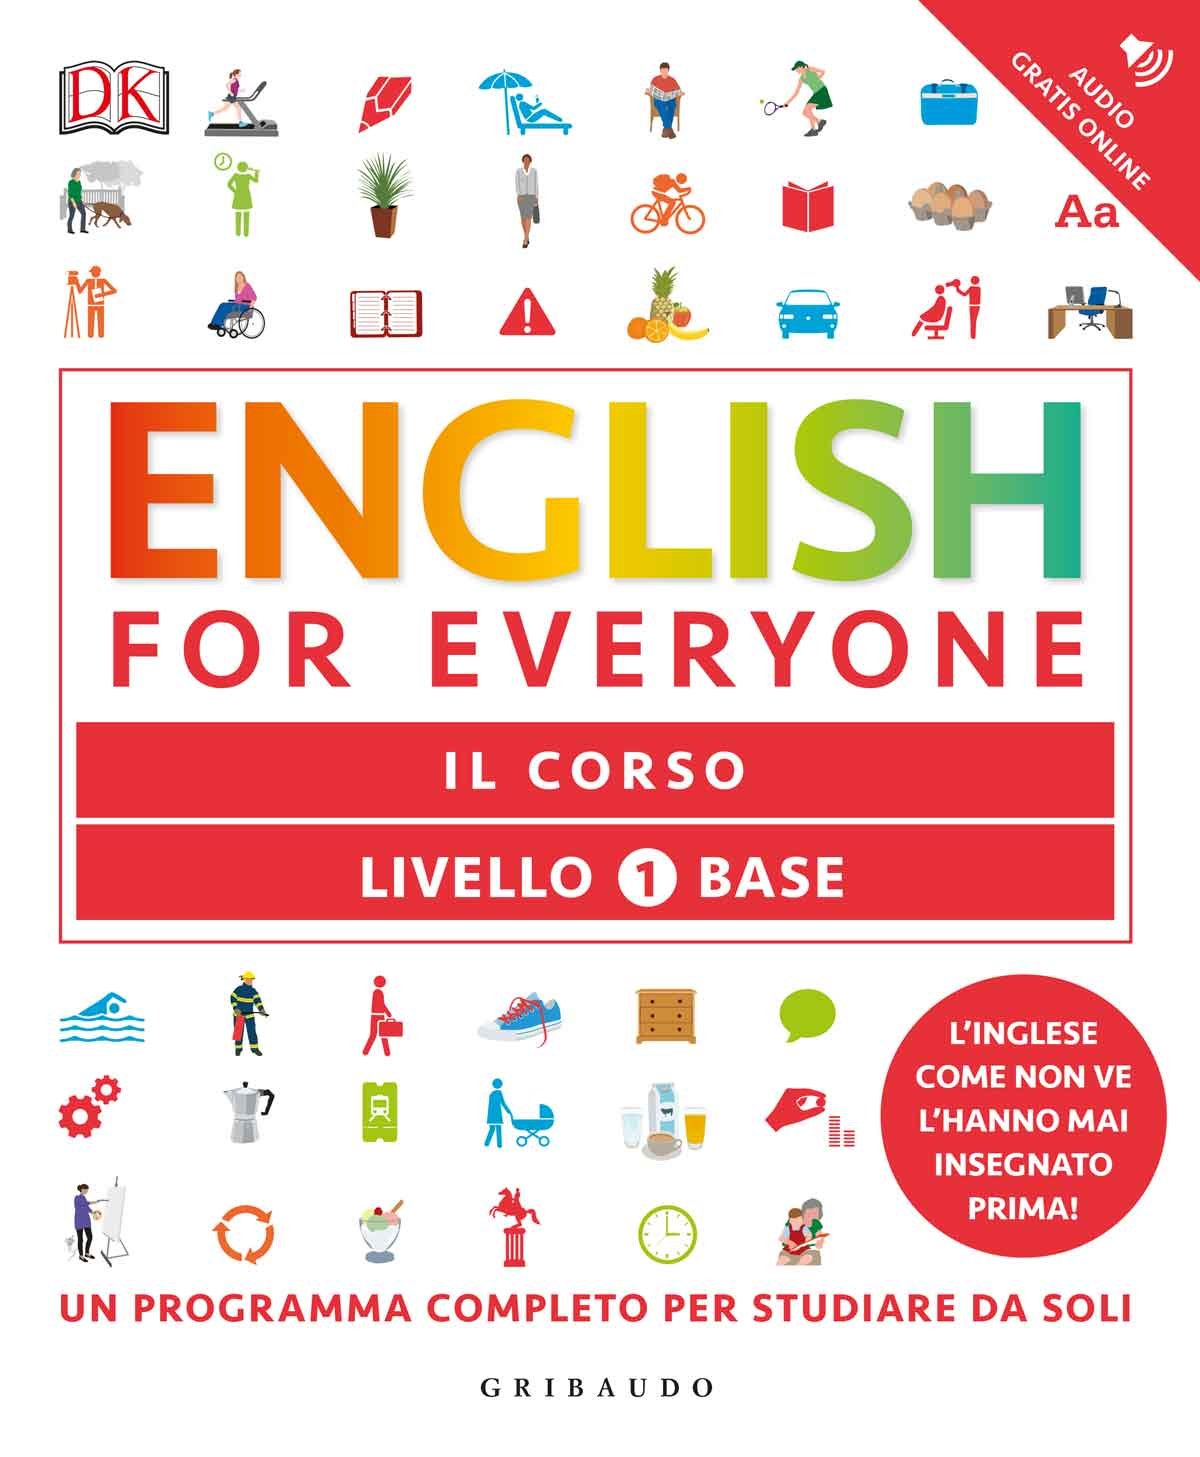 English for everyone - Livello 1 base - Il corso